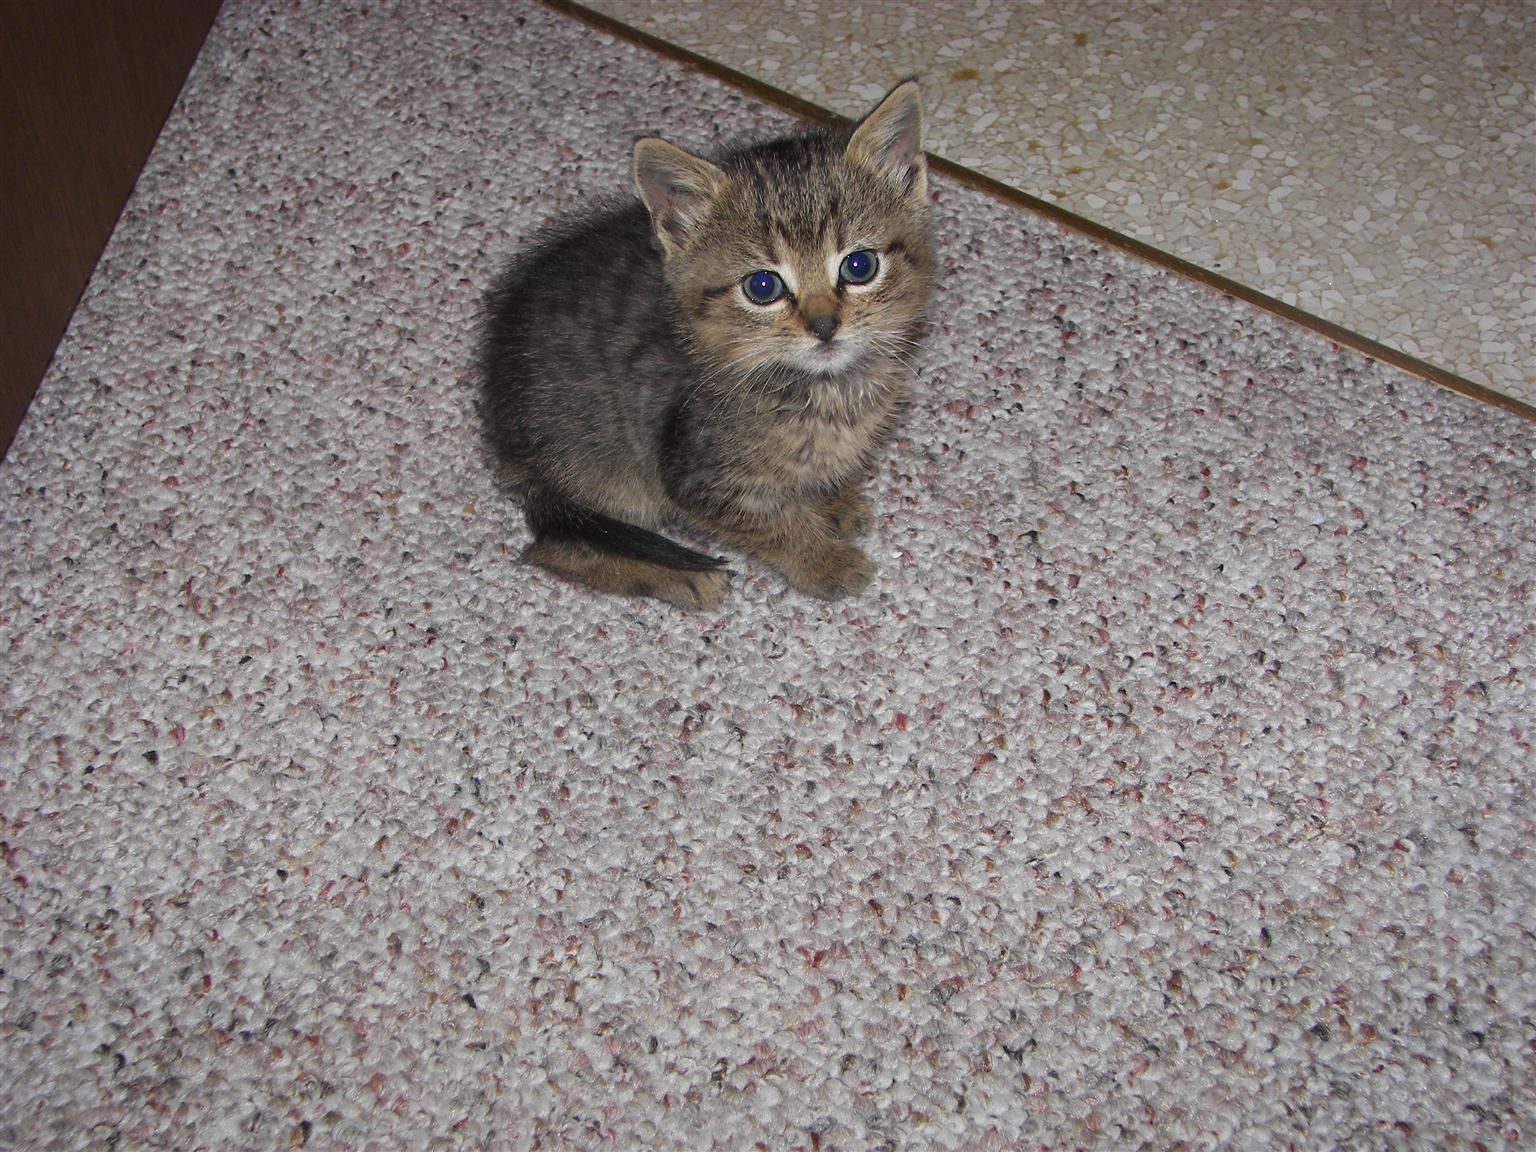 Four-week old Kitten